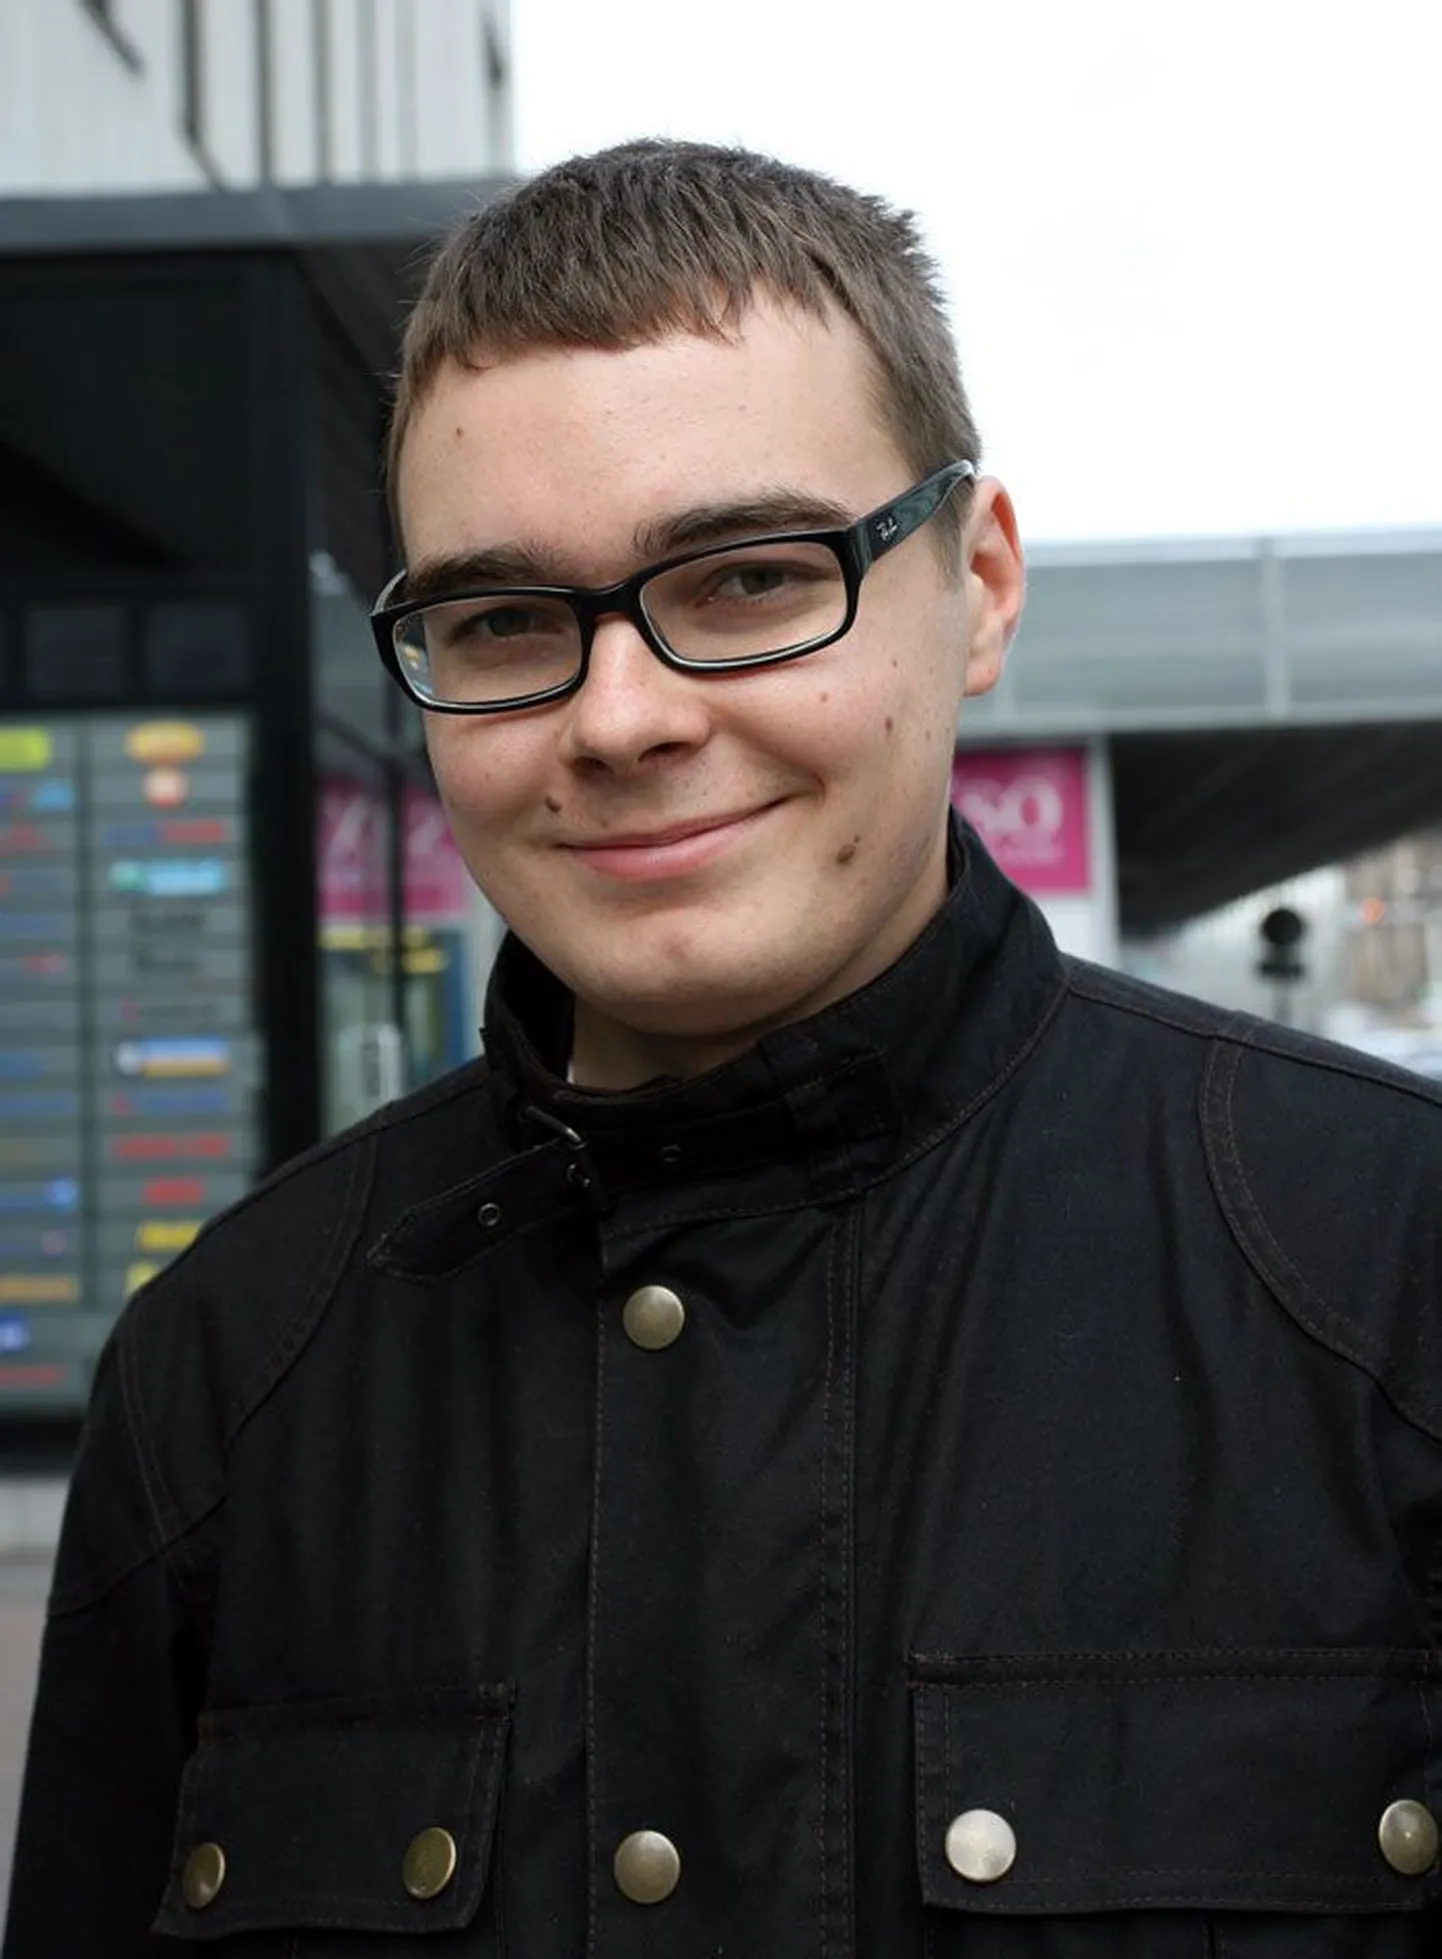 Johannes Arro (24)
monteerija-operaator